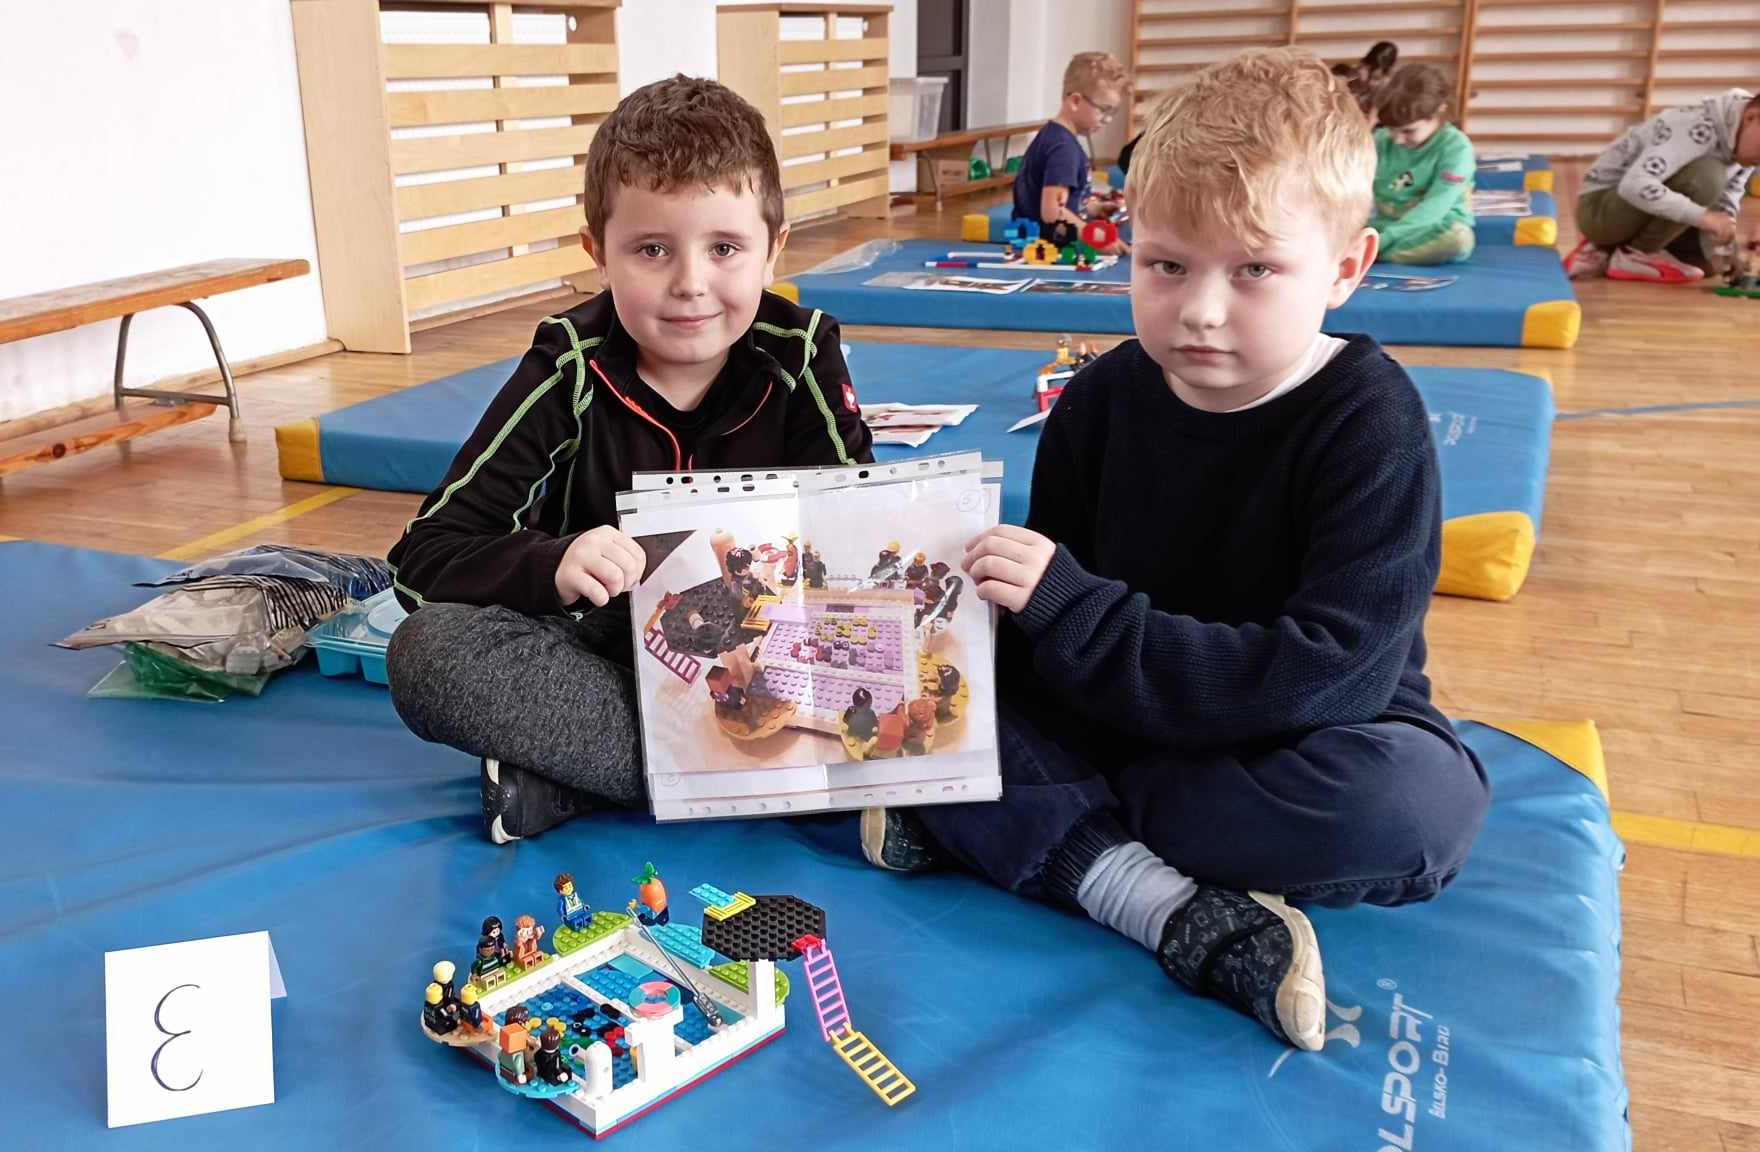 W sali gimnastycznej na niebieskim materacu siedzi dwoje chłopców z klasy 0. Przed nimi stoi ich budowla z klocków LEGO i etykietka z literą E. W tle 4 inne materace z dziećmi i budowlami z klocków.